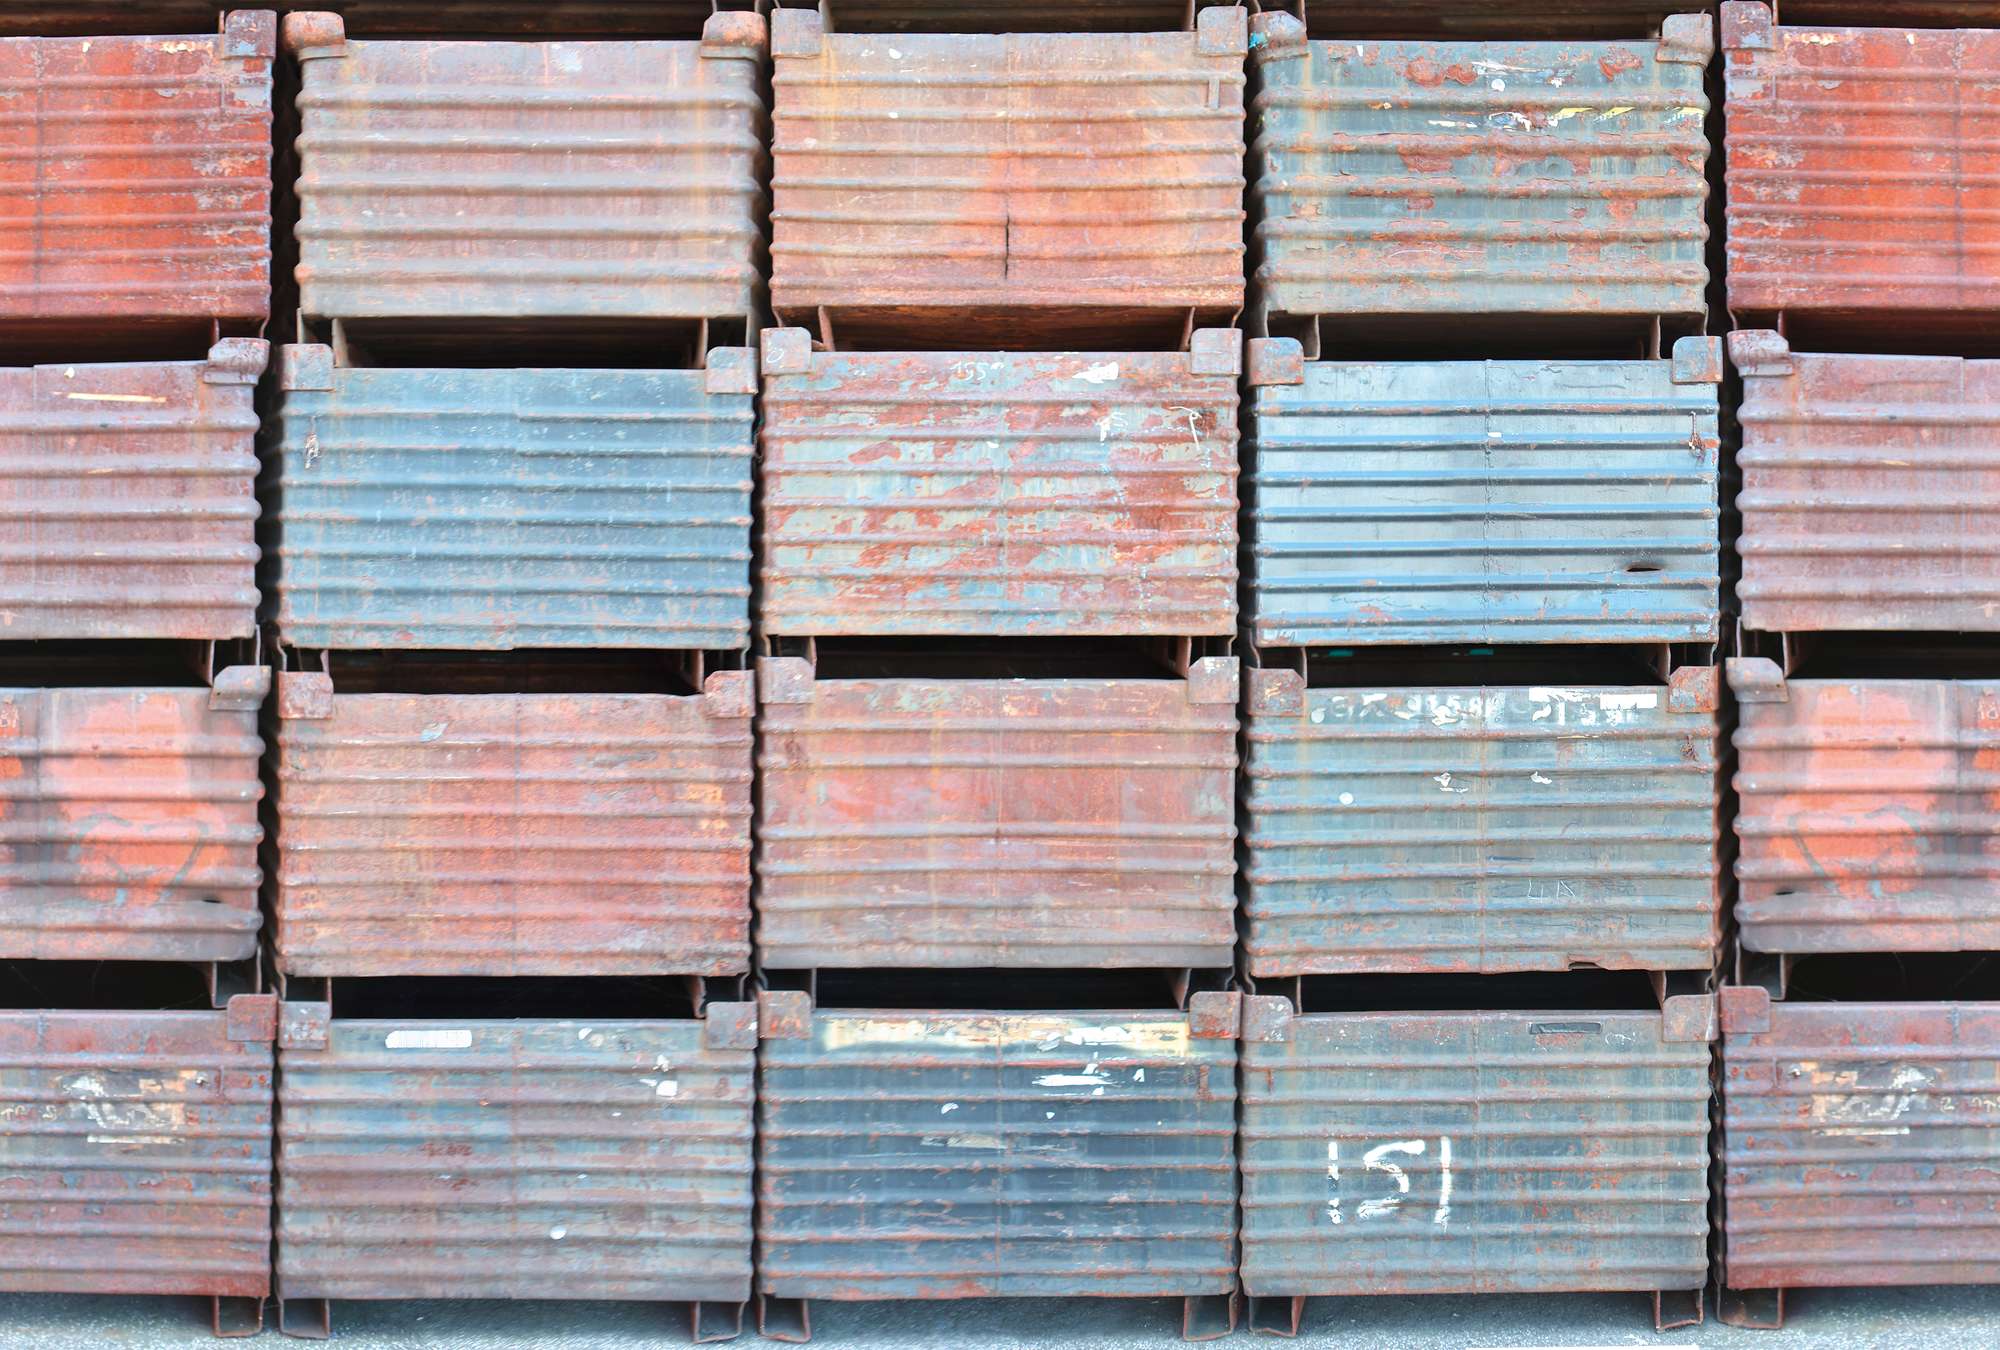             Fototapete mit bunten Stahlcontainern
        